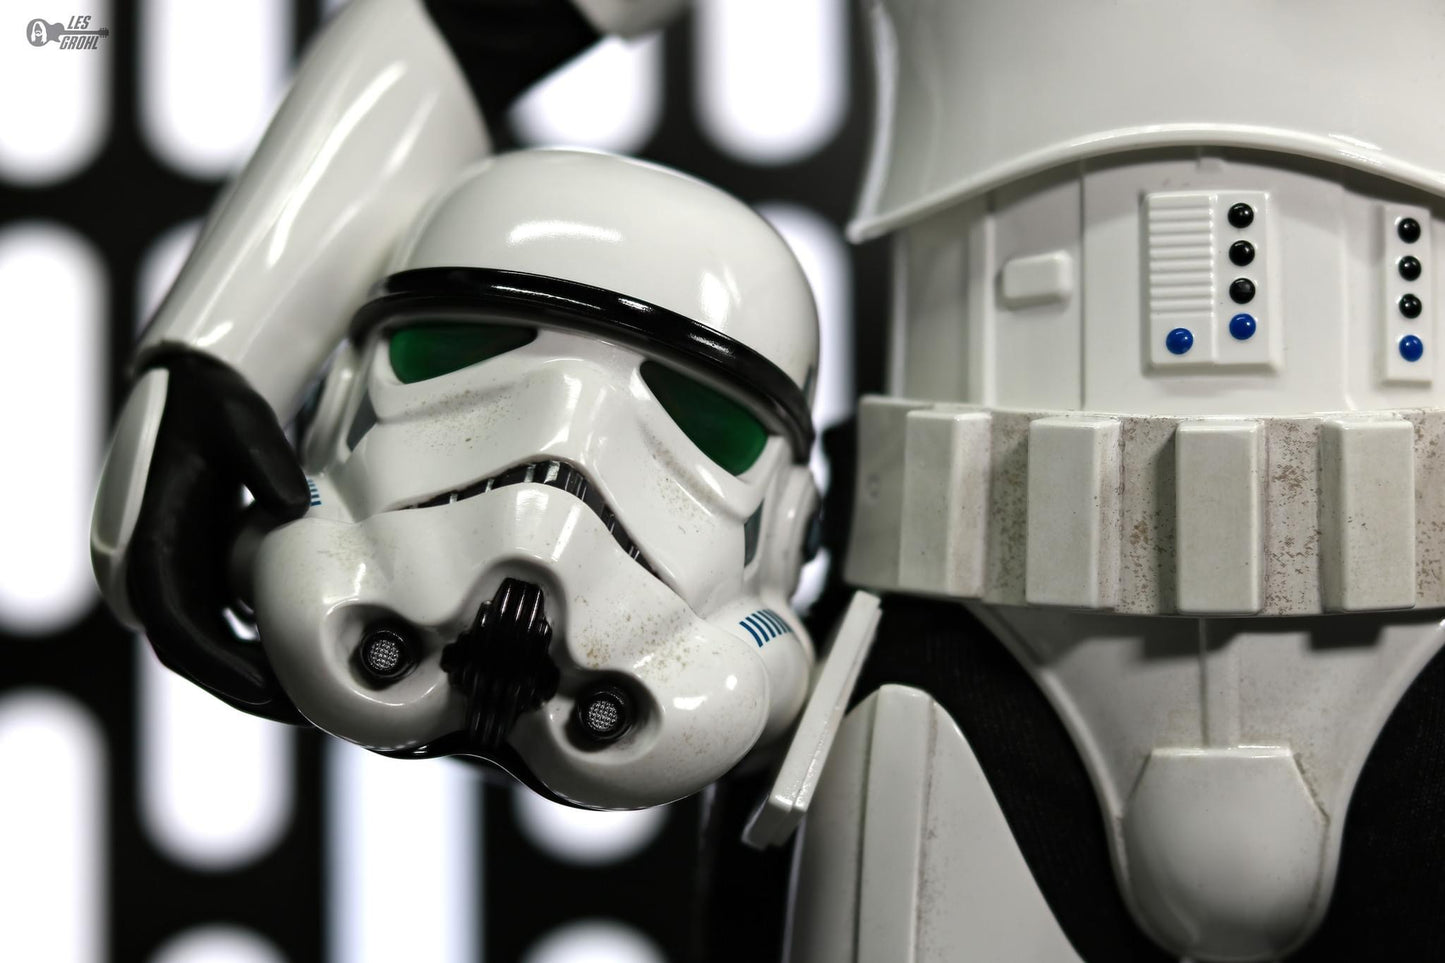 Preventa Figura Stormtrooper con entorno de la Estrella de la Muerte / Death Star Environment - Star Wars™ marca Hot Toys MMS736 escala 1/6